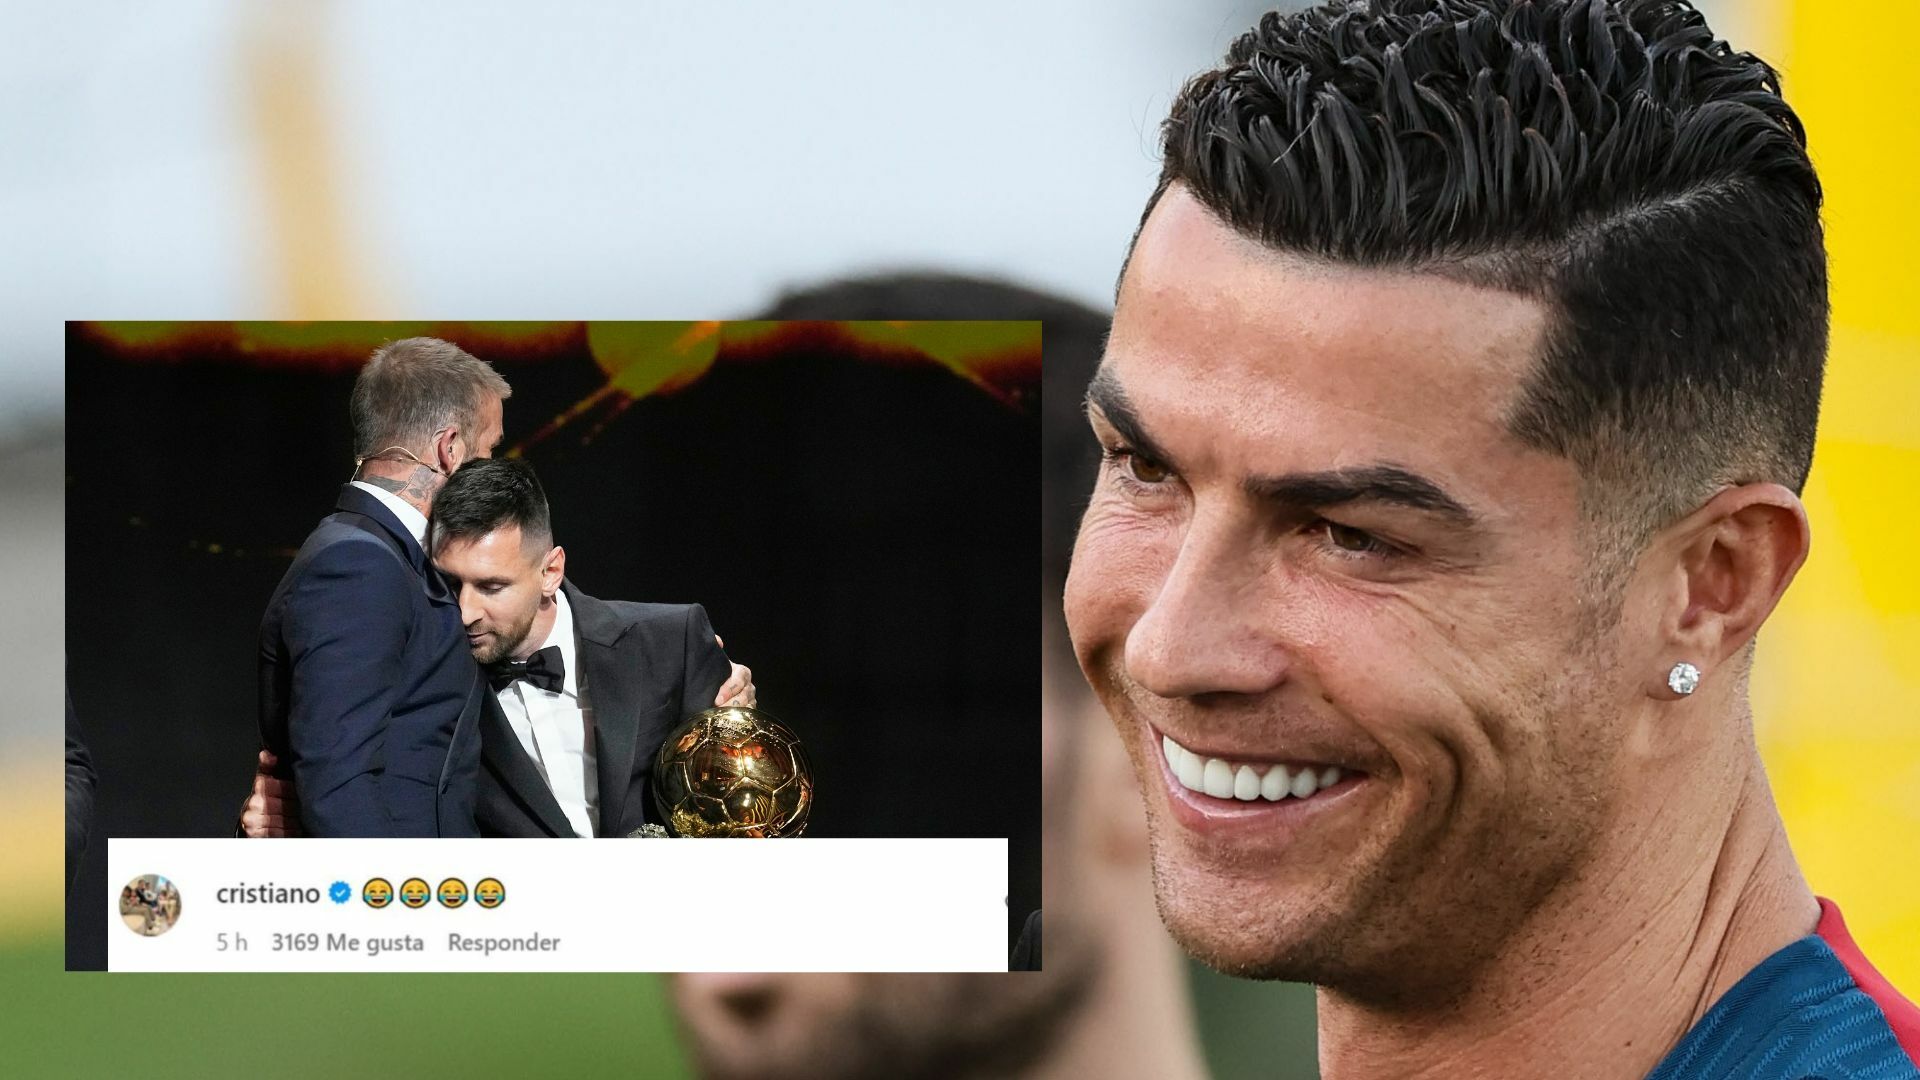 Cristiano se ríe en el análisis de Roncero contra el octavo Balón de Oro de Messi 